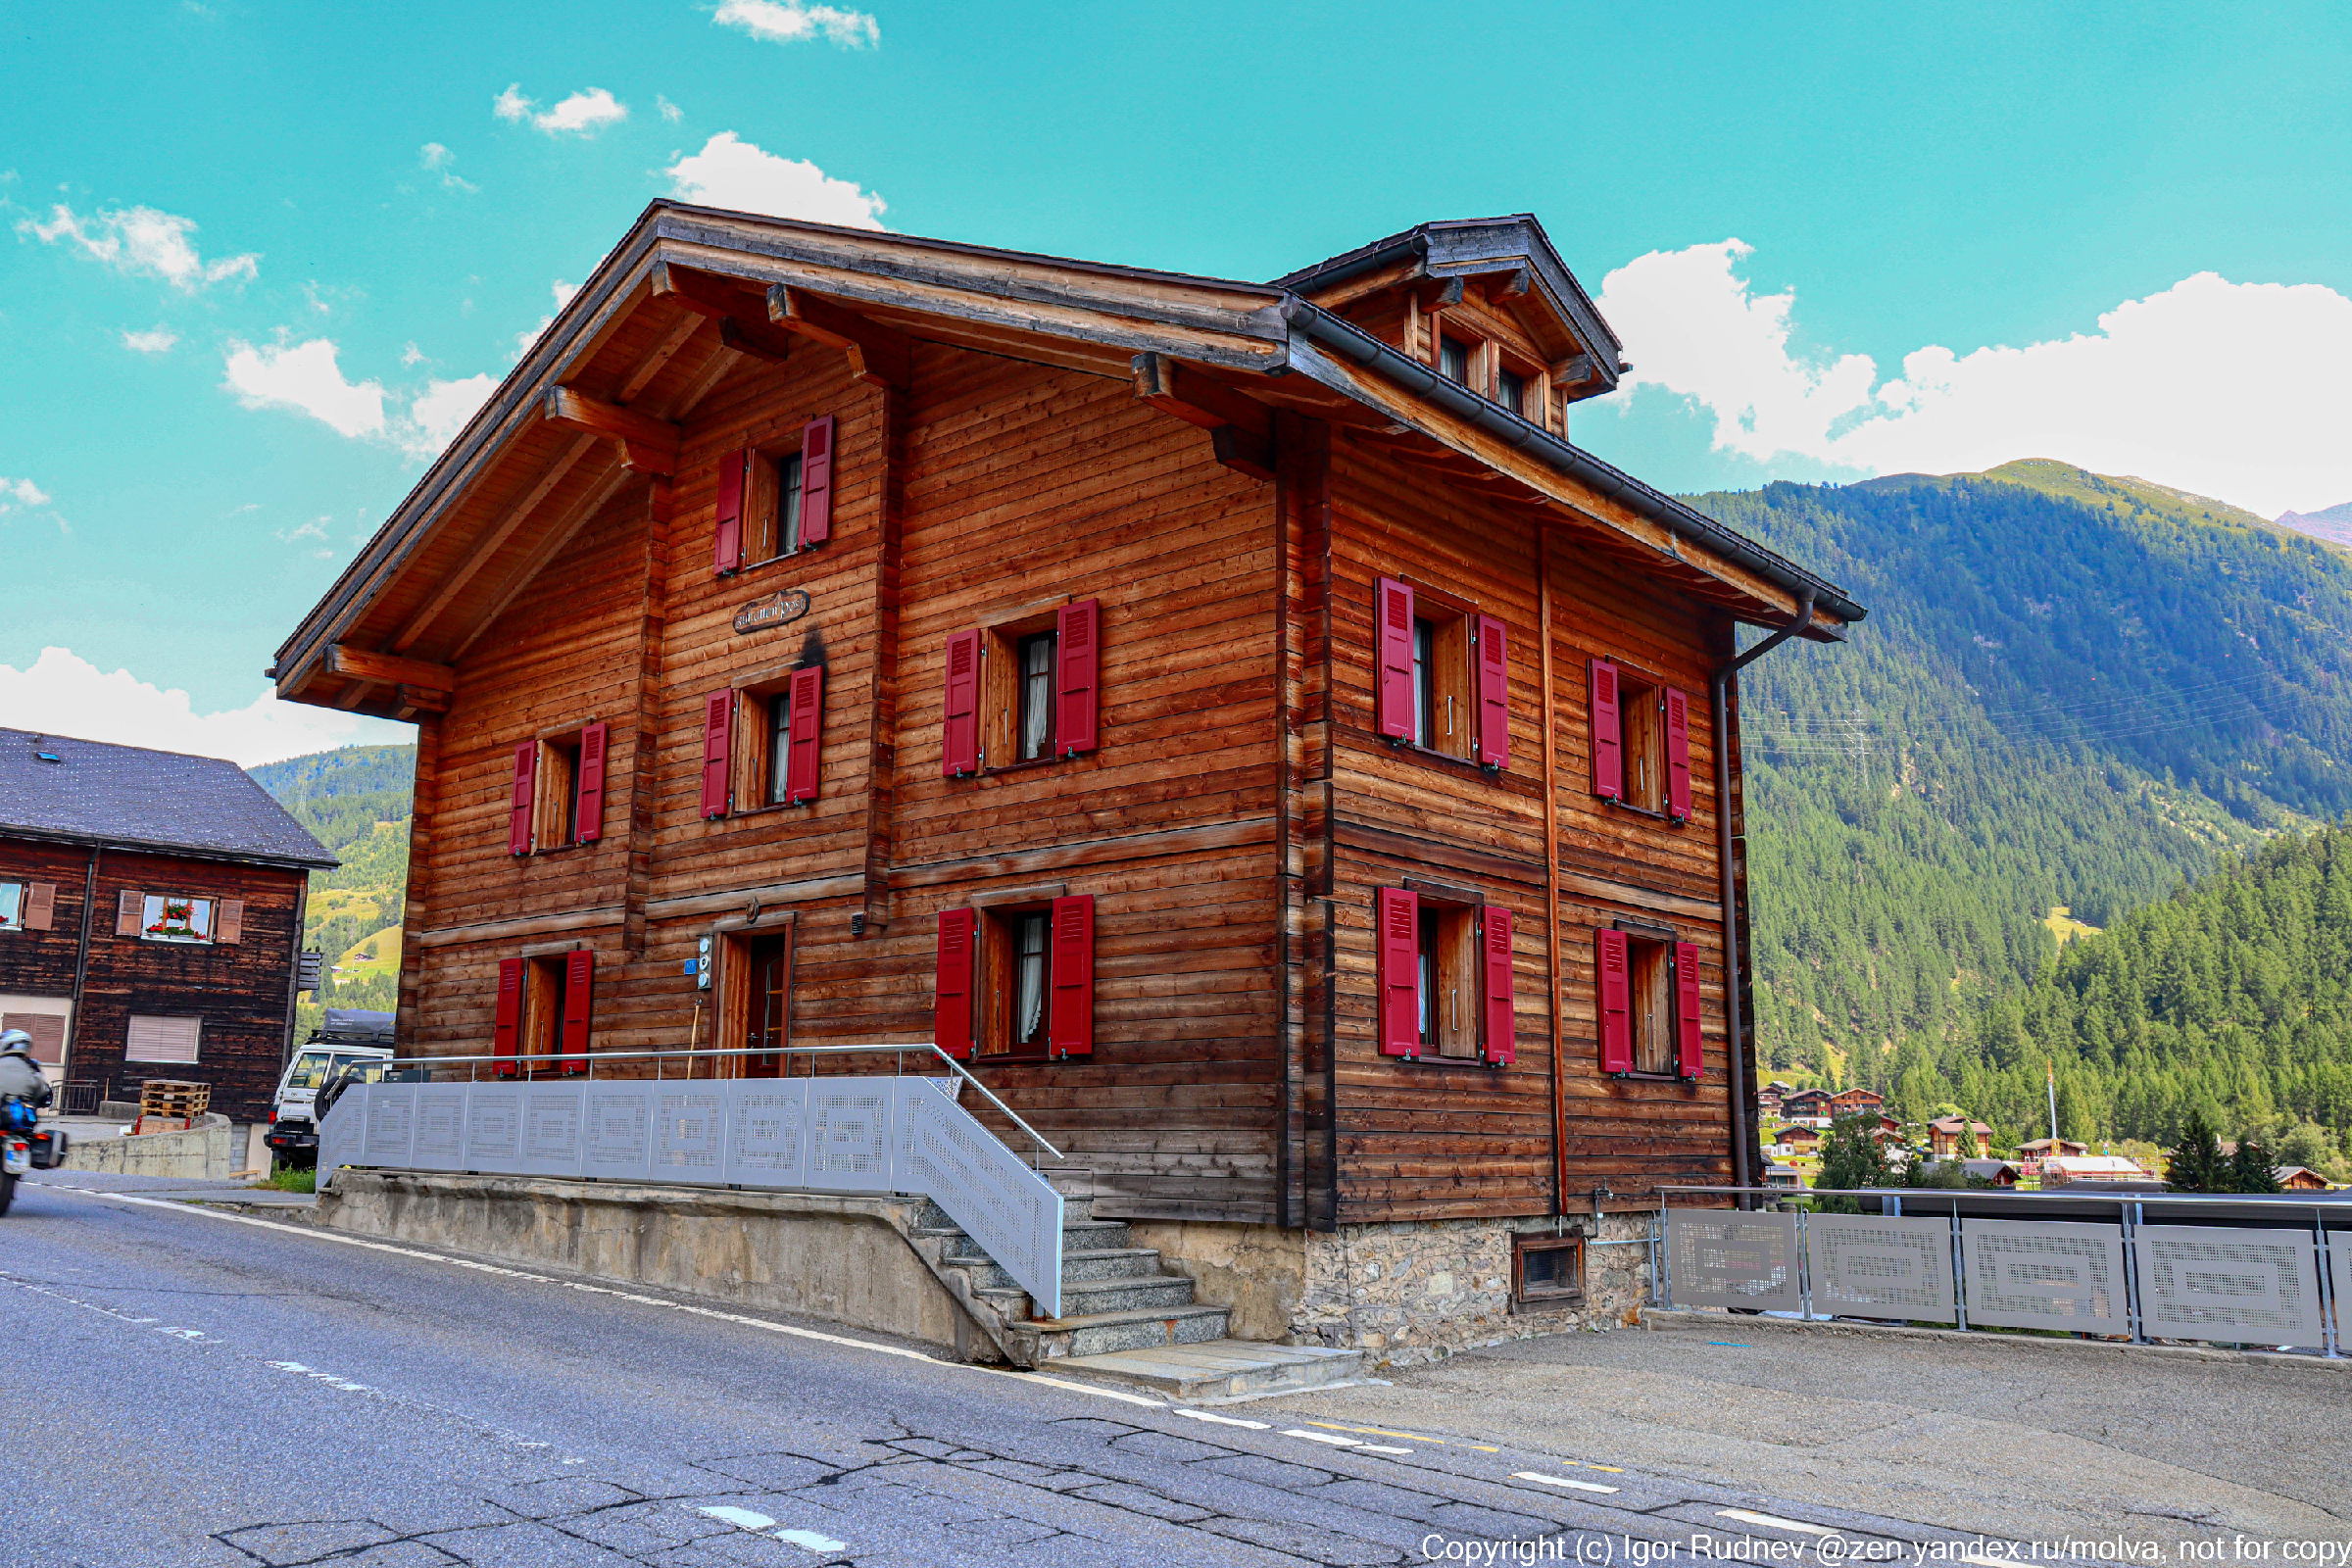 Как живется в деревне в Швейцарии? Смотрим фото села в швейцарском захолустье1